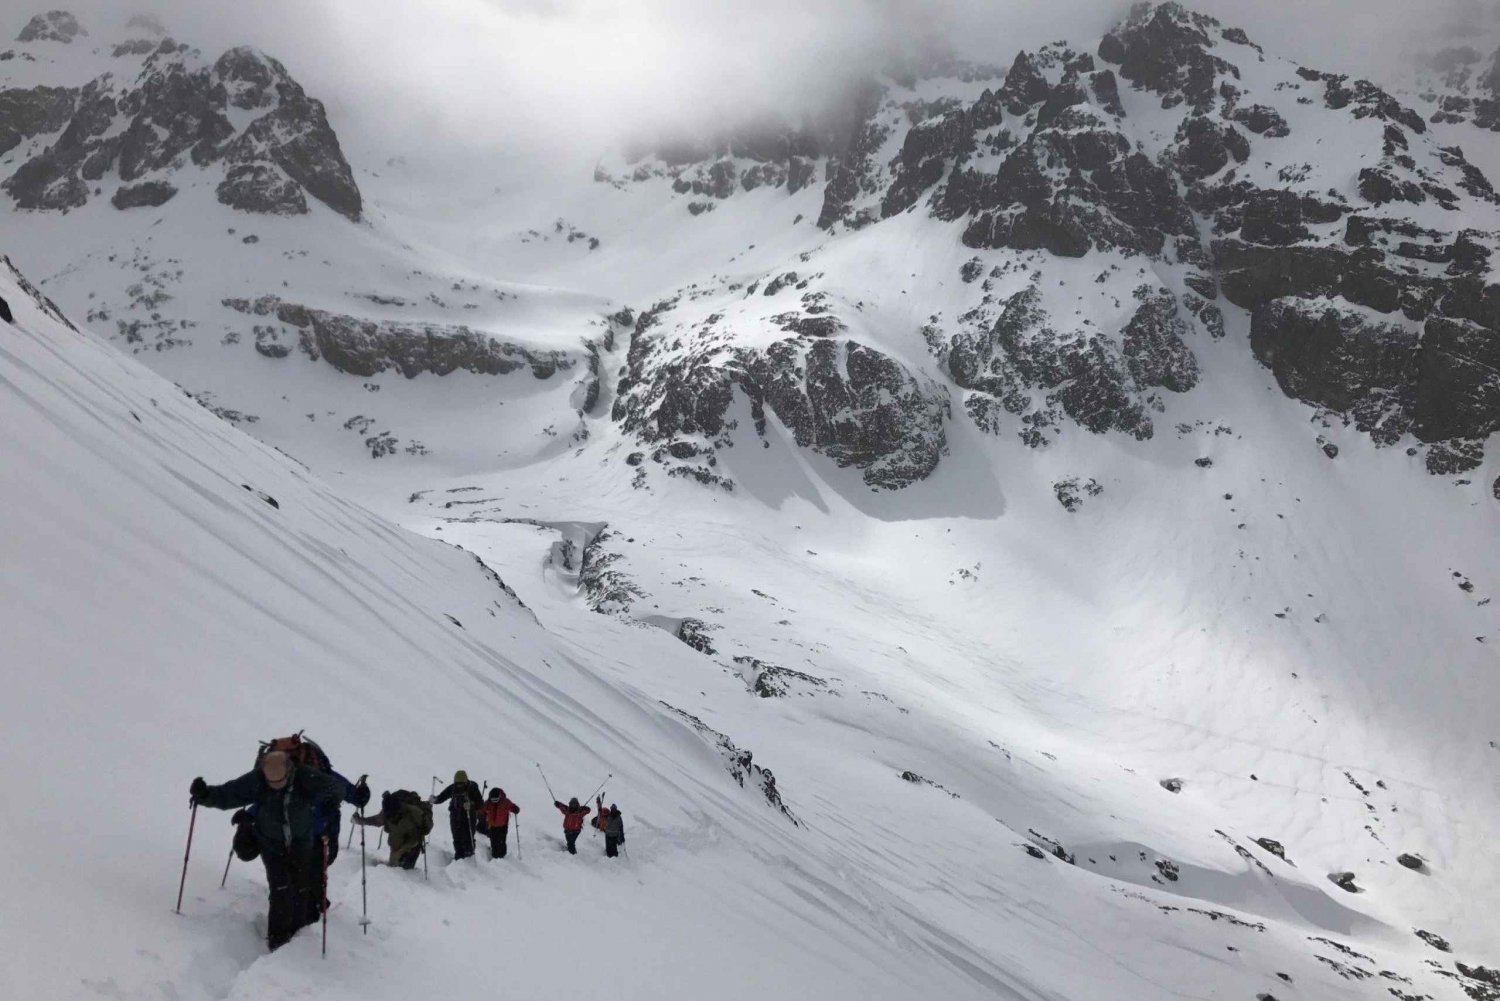 Toubkal-bjerget: Trek til toppen (2 dage og 1 nat)